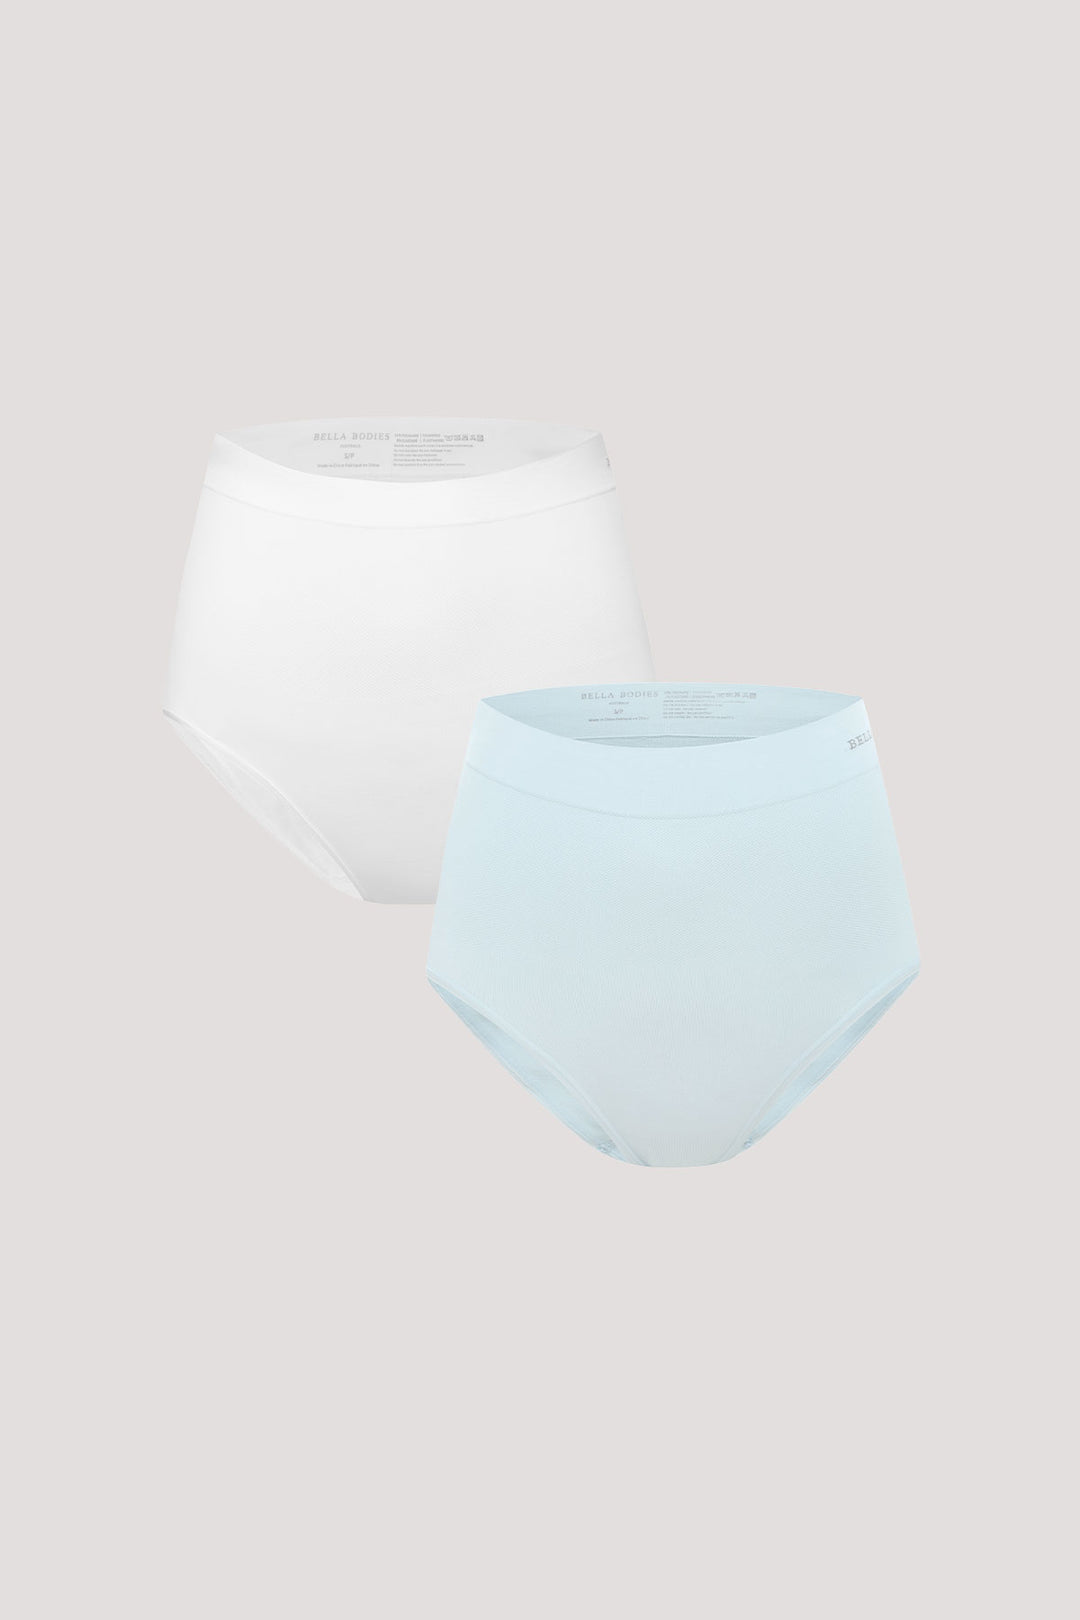 Women's slimming & firming high Waist underwear 2 Pack | Bella Bodies Australia | White & Ice Blue